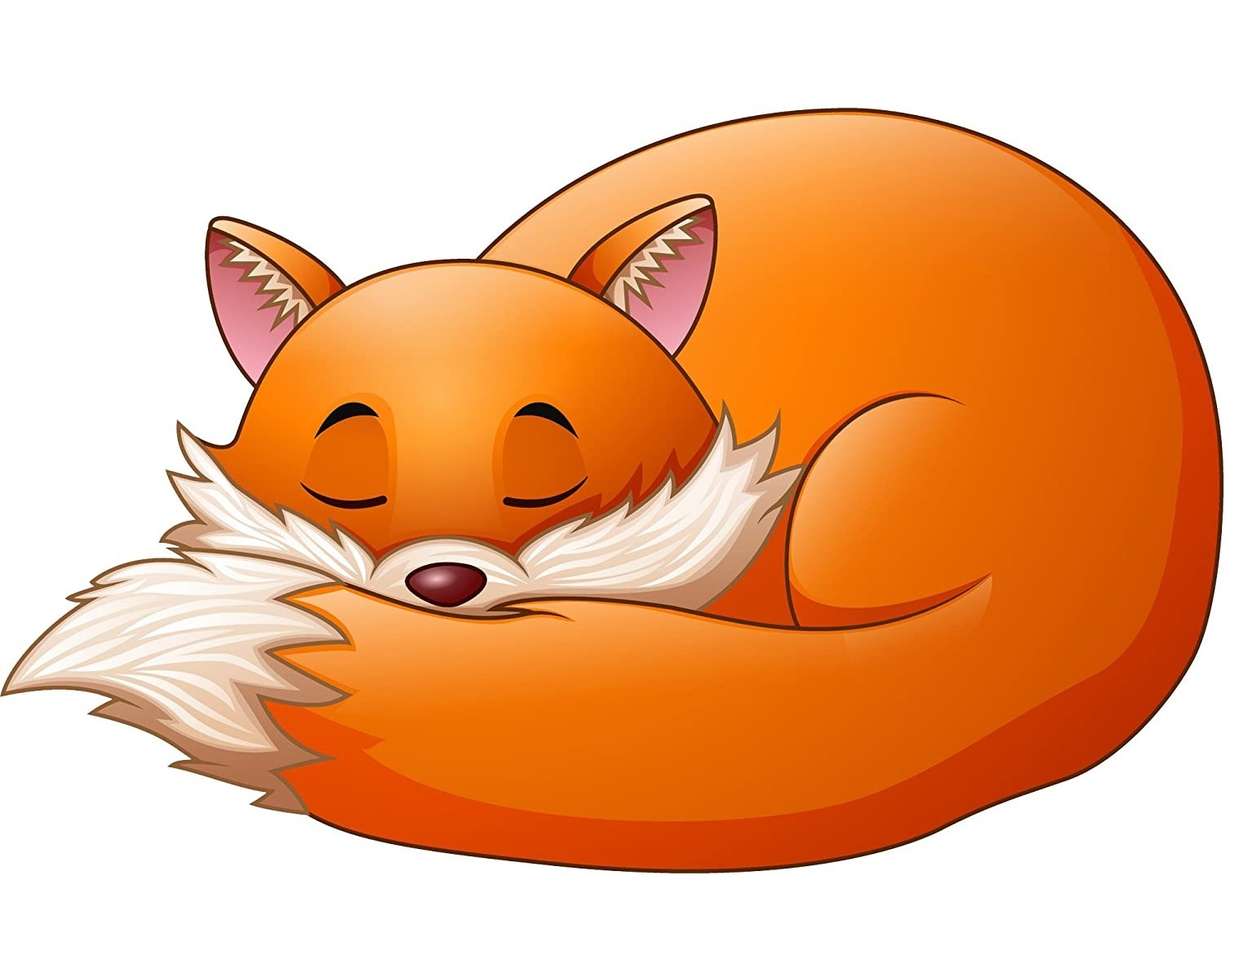 The Sleepy Fox online puzzle